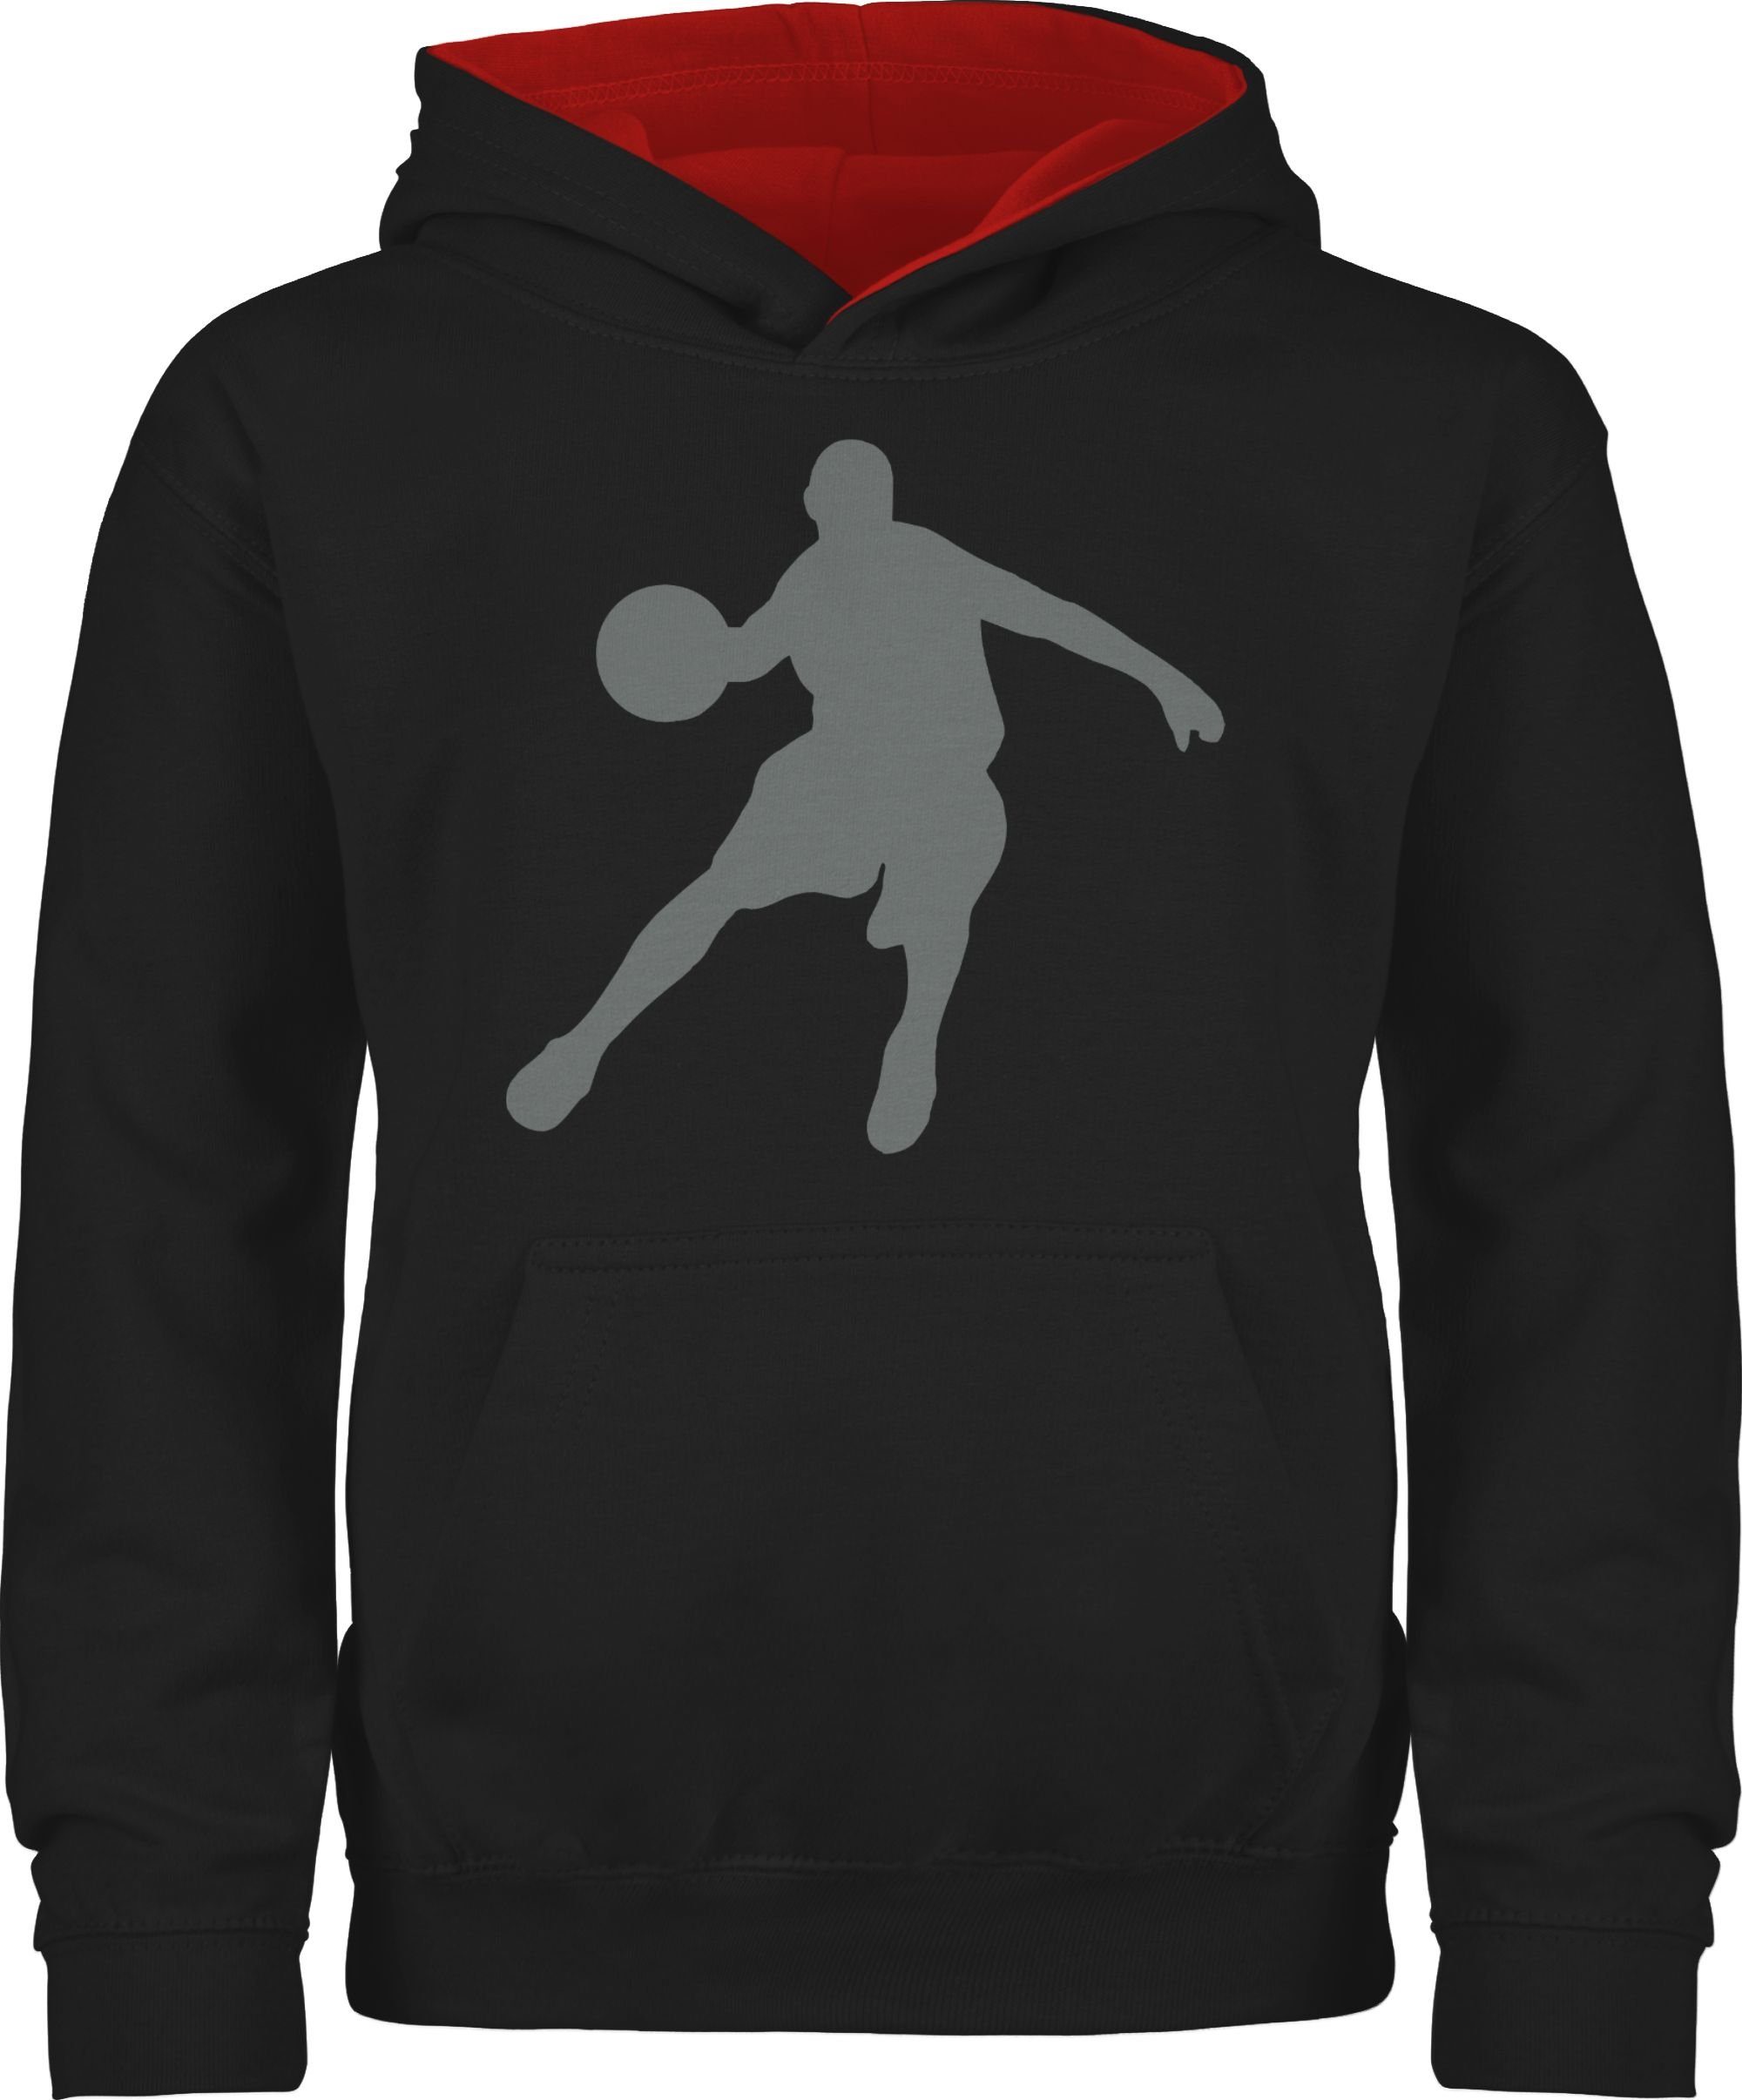 Shirtracer Hoodie Basketballspieler Kinder Sport Kleidung 1 Schwarz/Rot